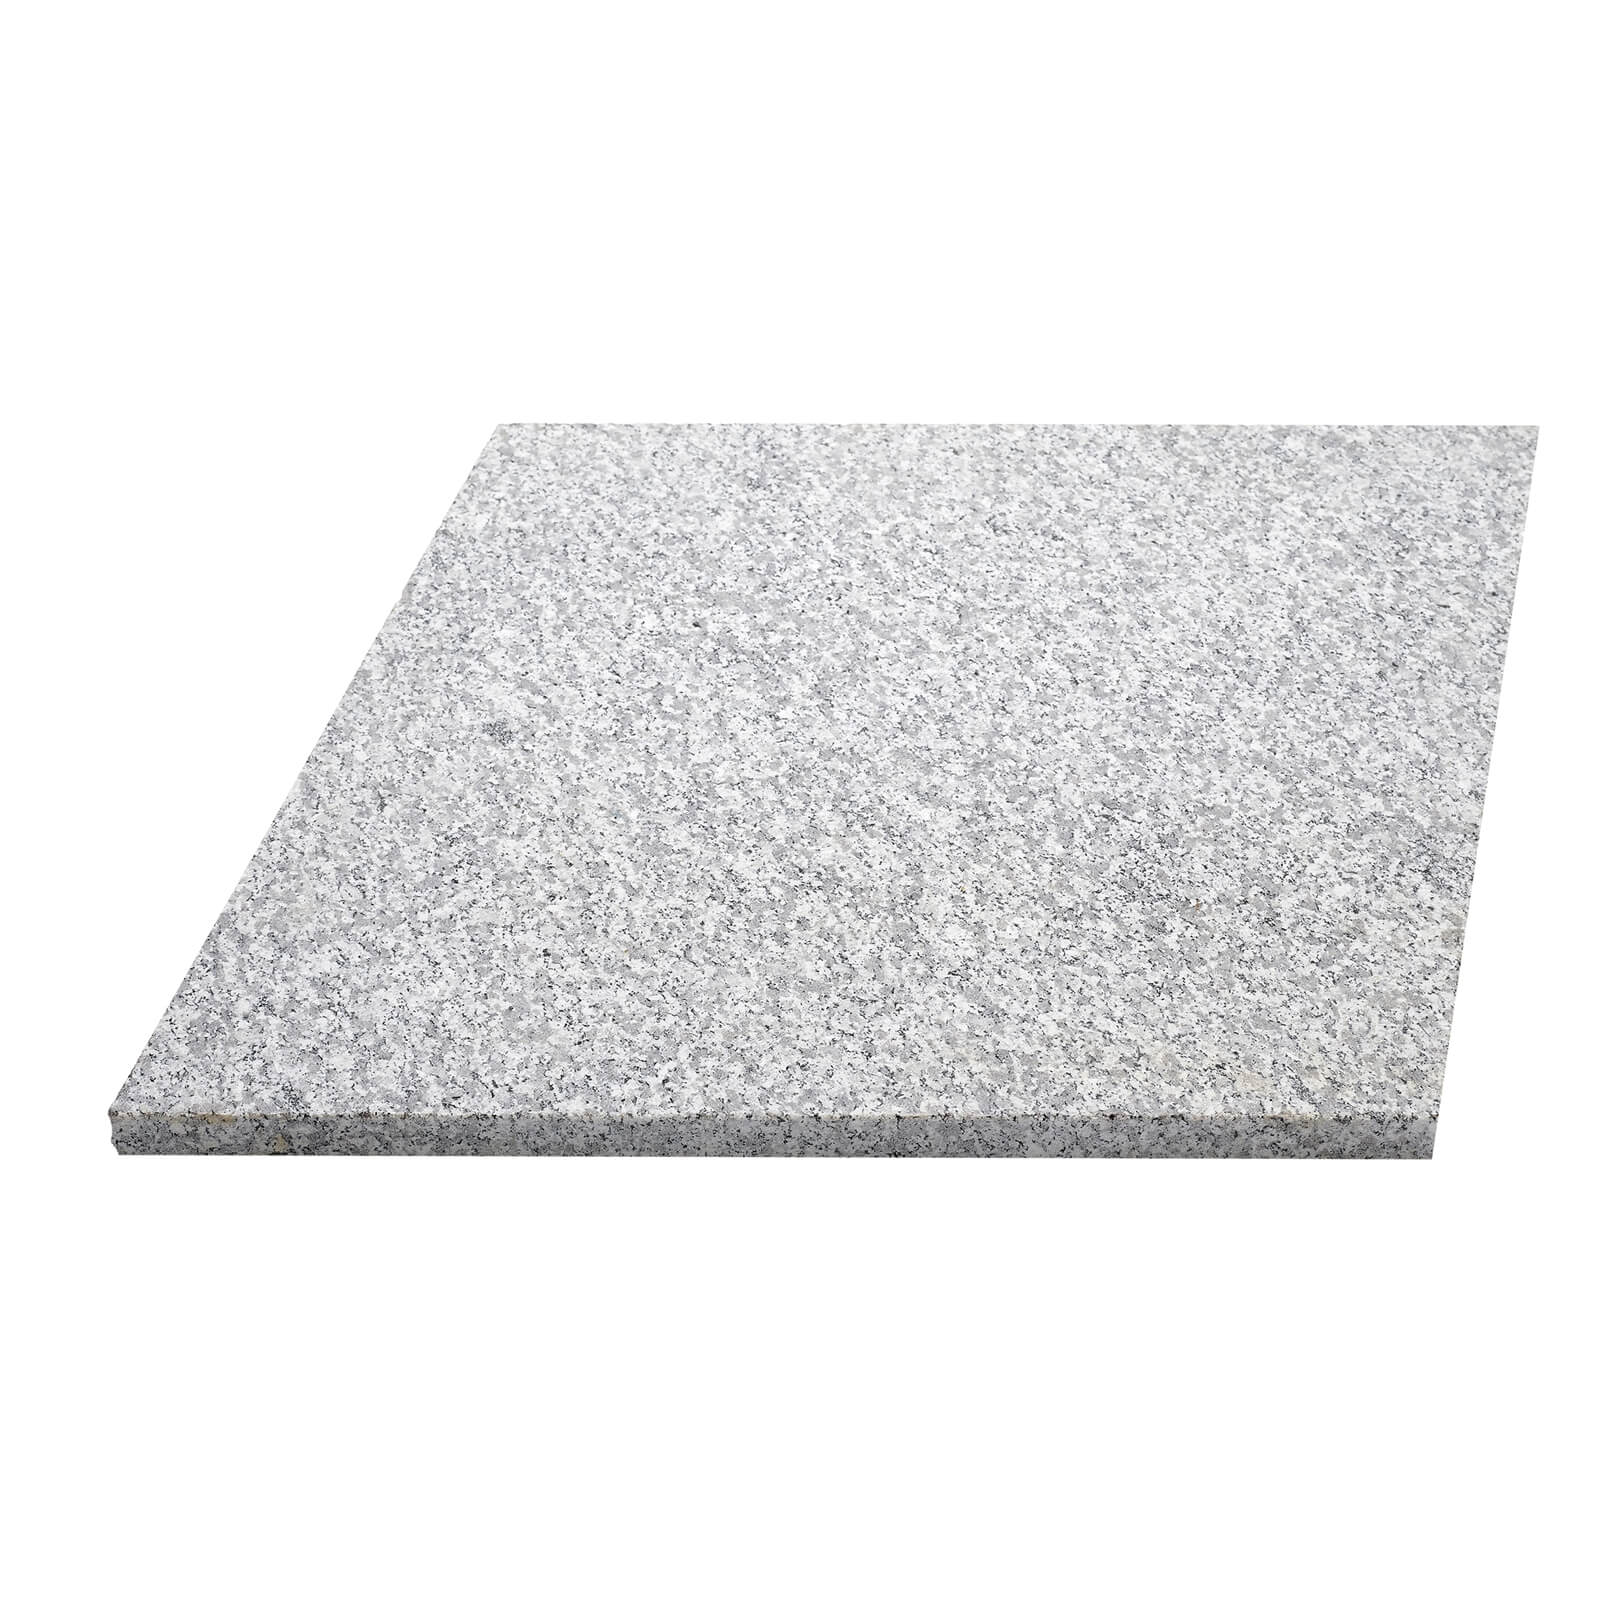 Granite Diamond Paving 450 x 450mm Light Grey - Full Pack of 78 Slabs